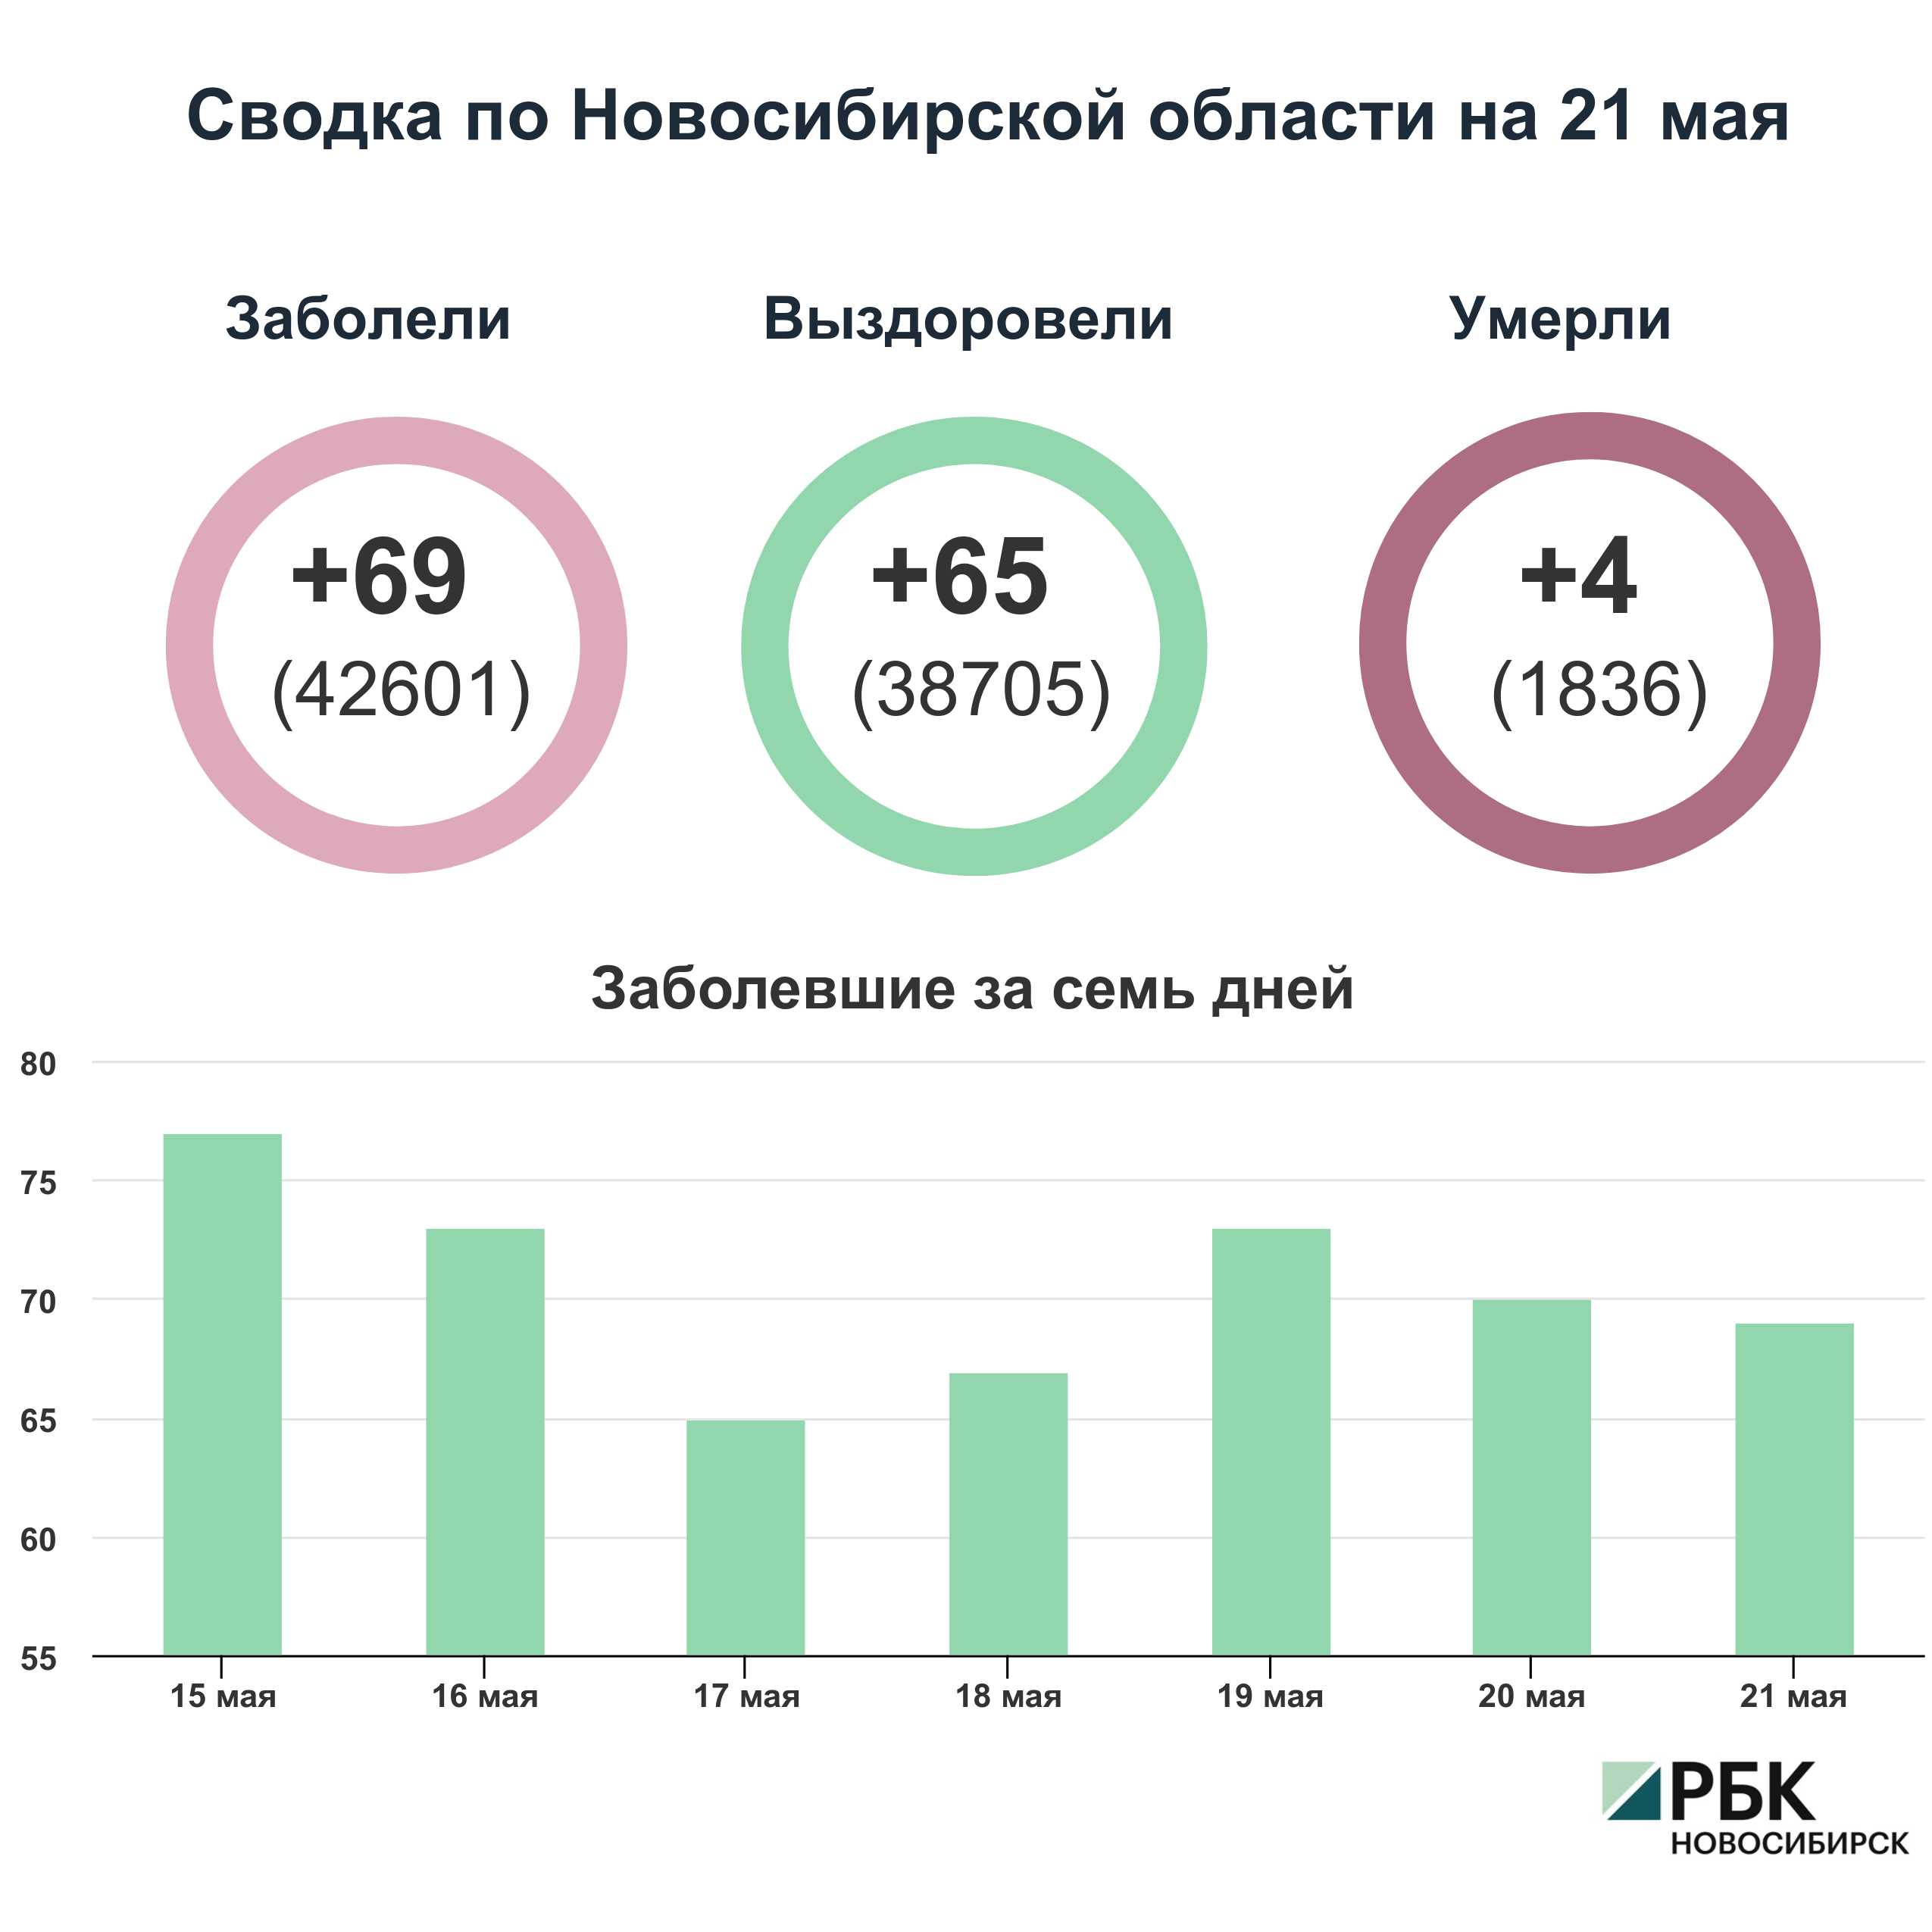 Коронавирус в Новосибирске: сводка на 21 мая